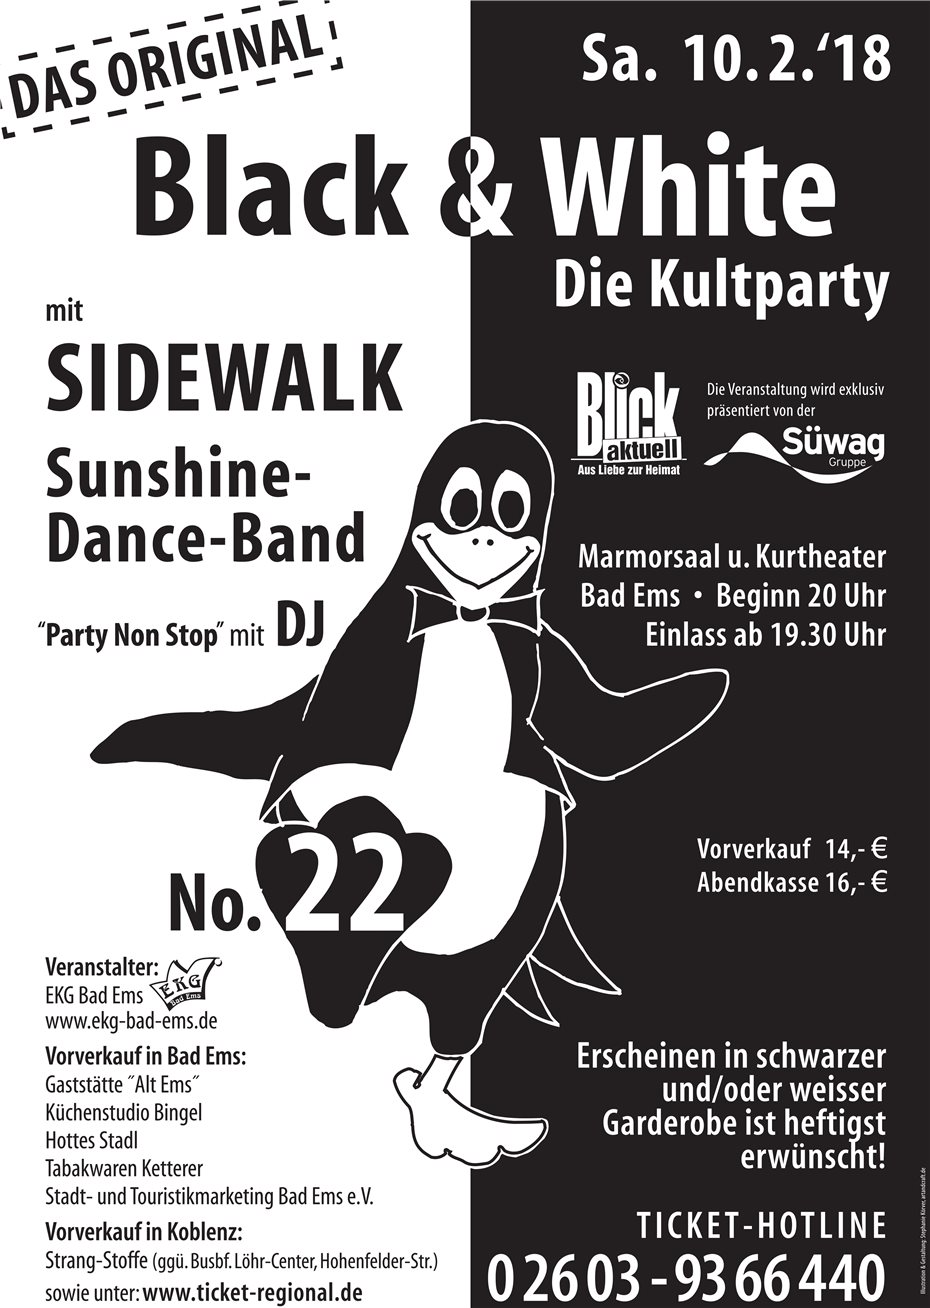 Die Kultparty Black & White am Karnevalssamstag in Bad Ems